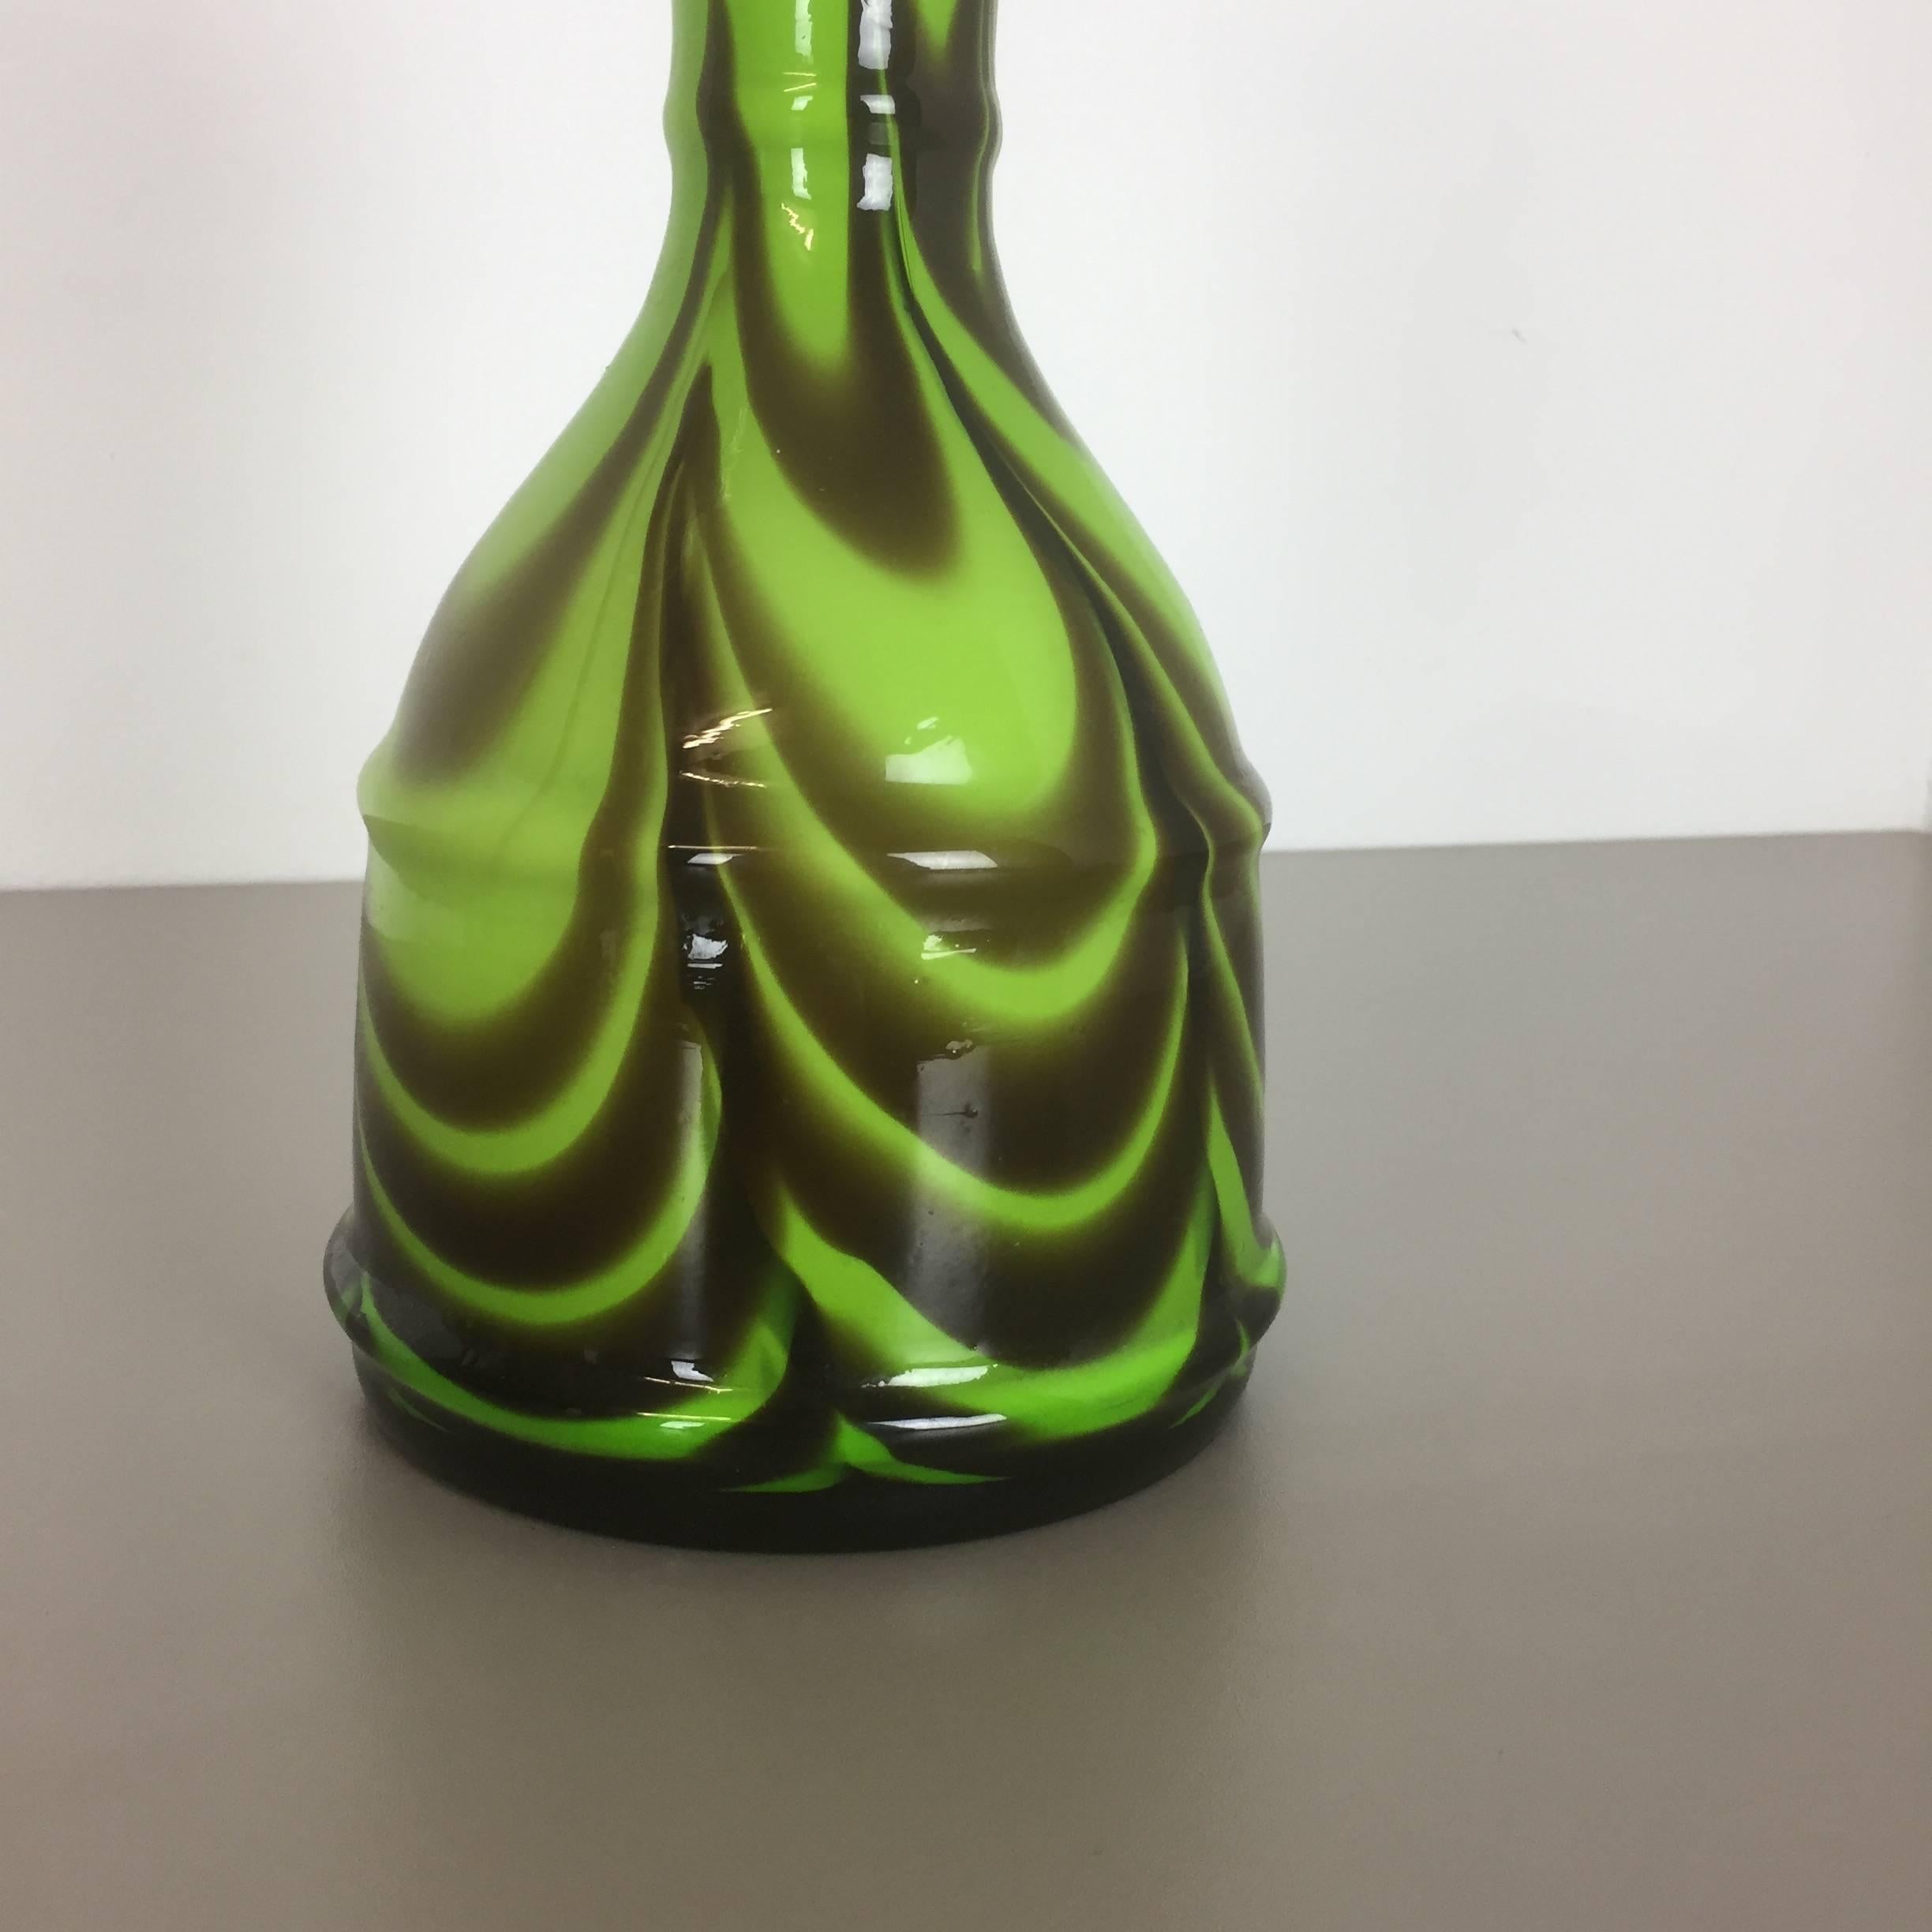 Italienische Vintage-Vase aus Opal, Florence, Design von Carlo Moretti, 1970er Jahre (Glas)